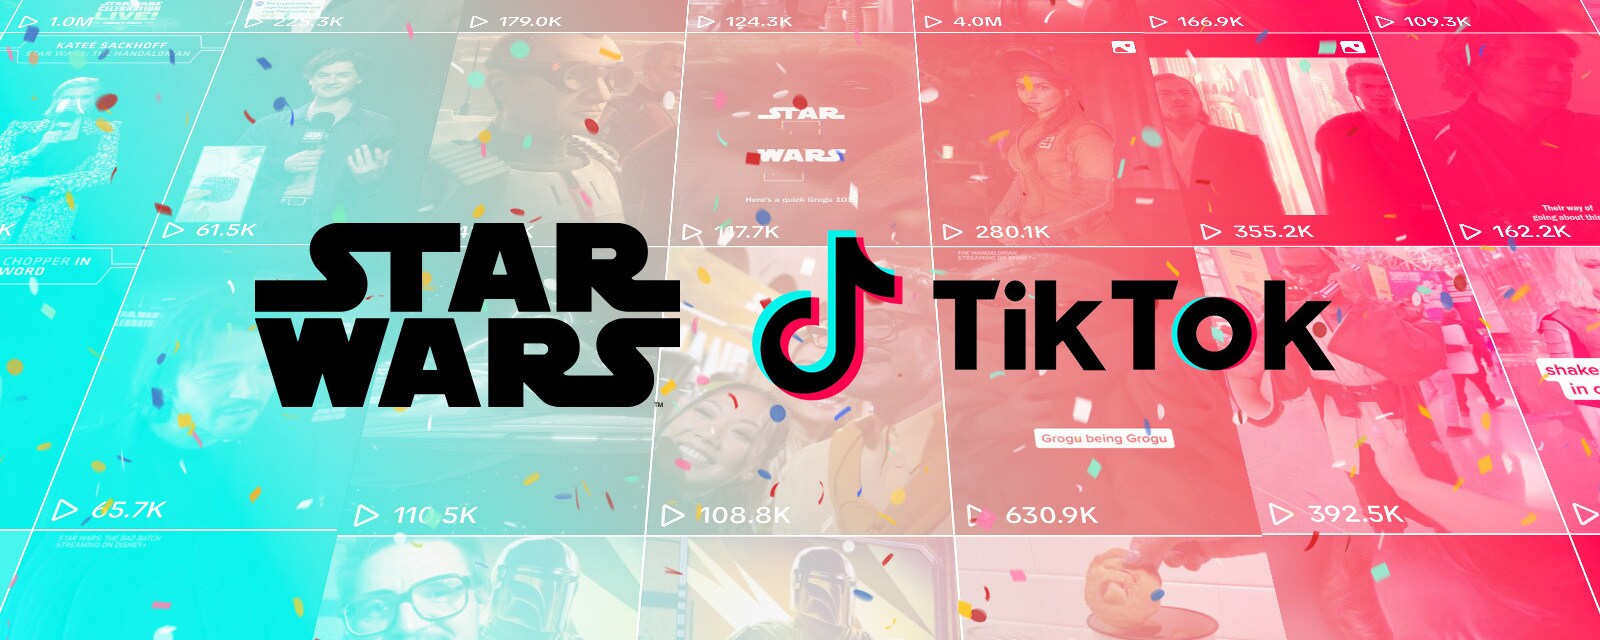 Star Wars and Tik Tok logo graphic